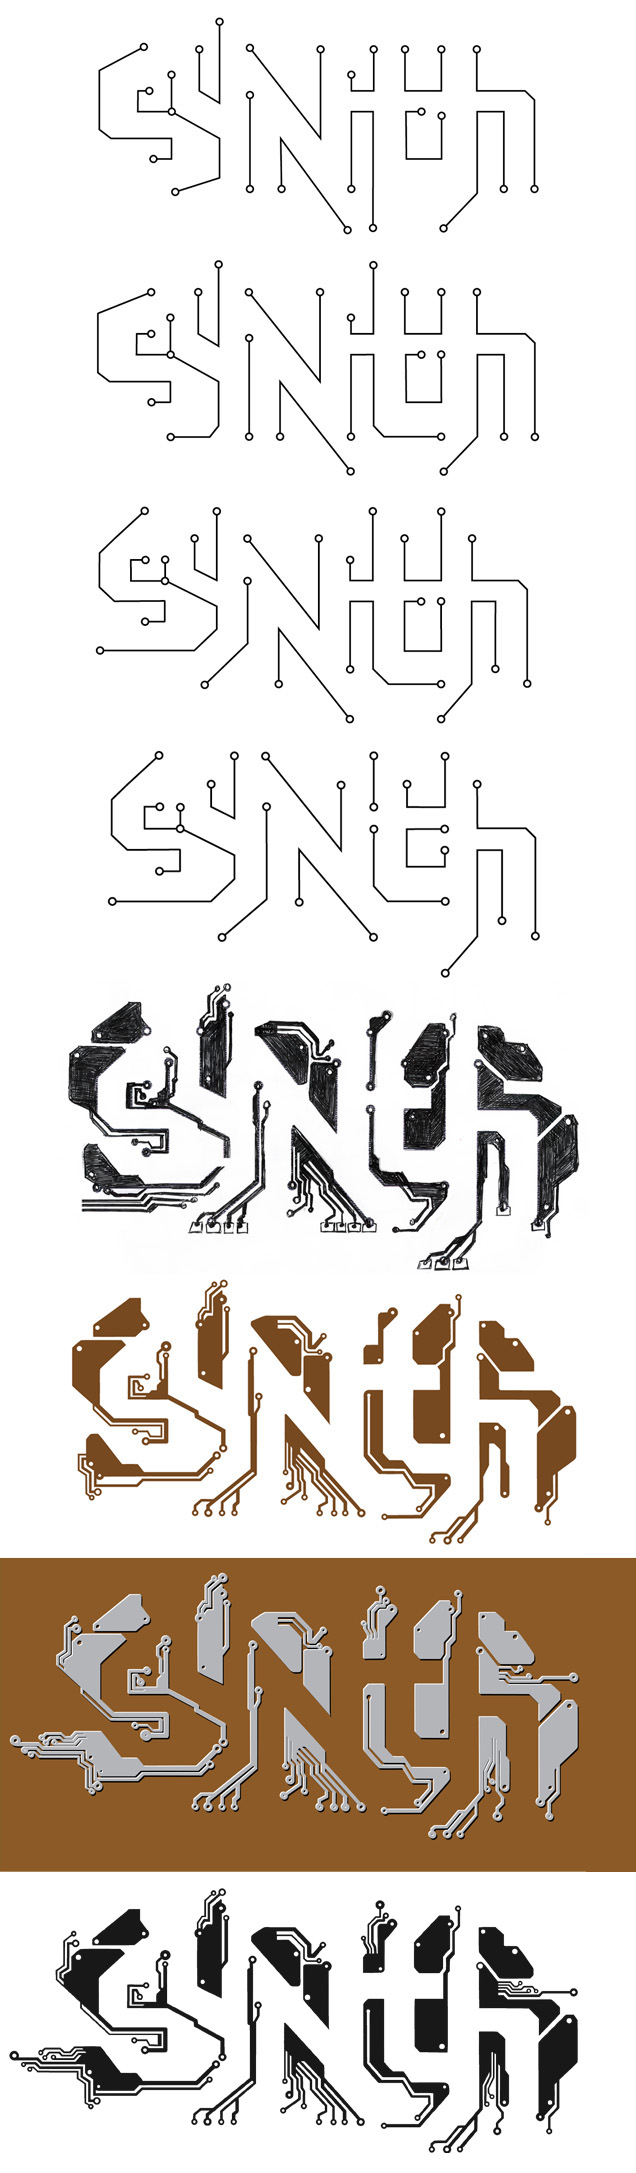 Synth logo progression